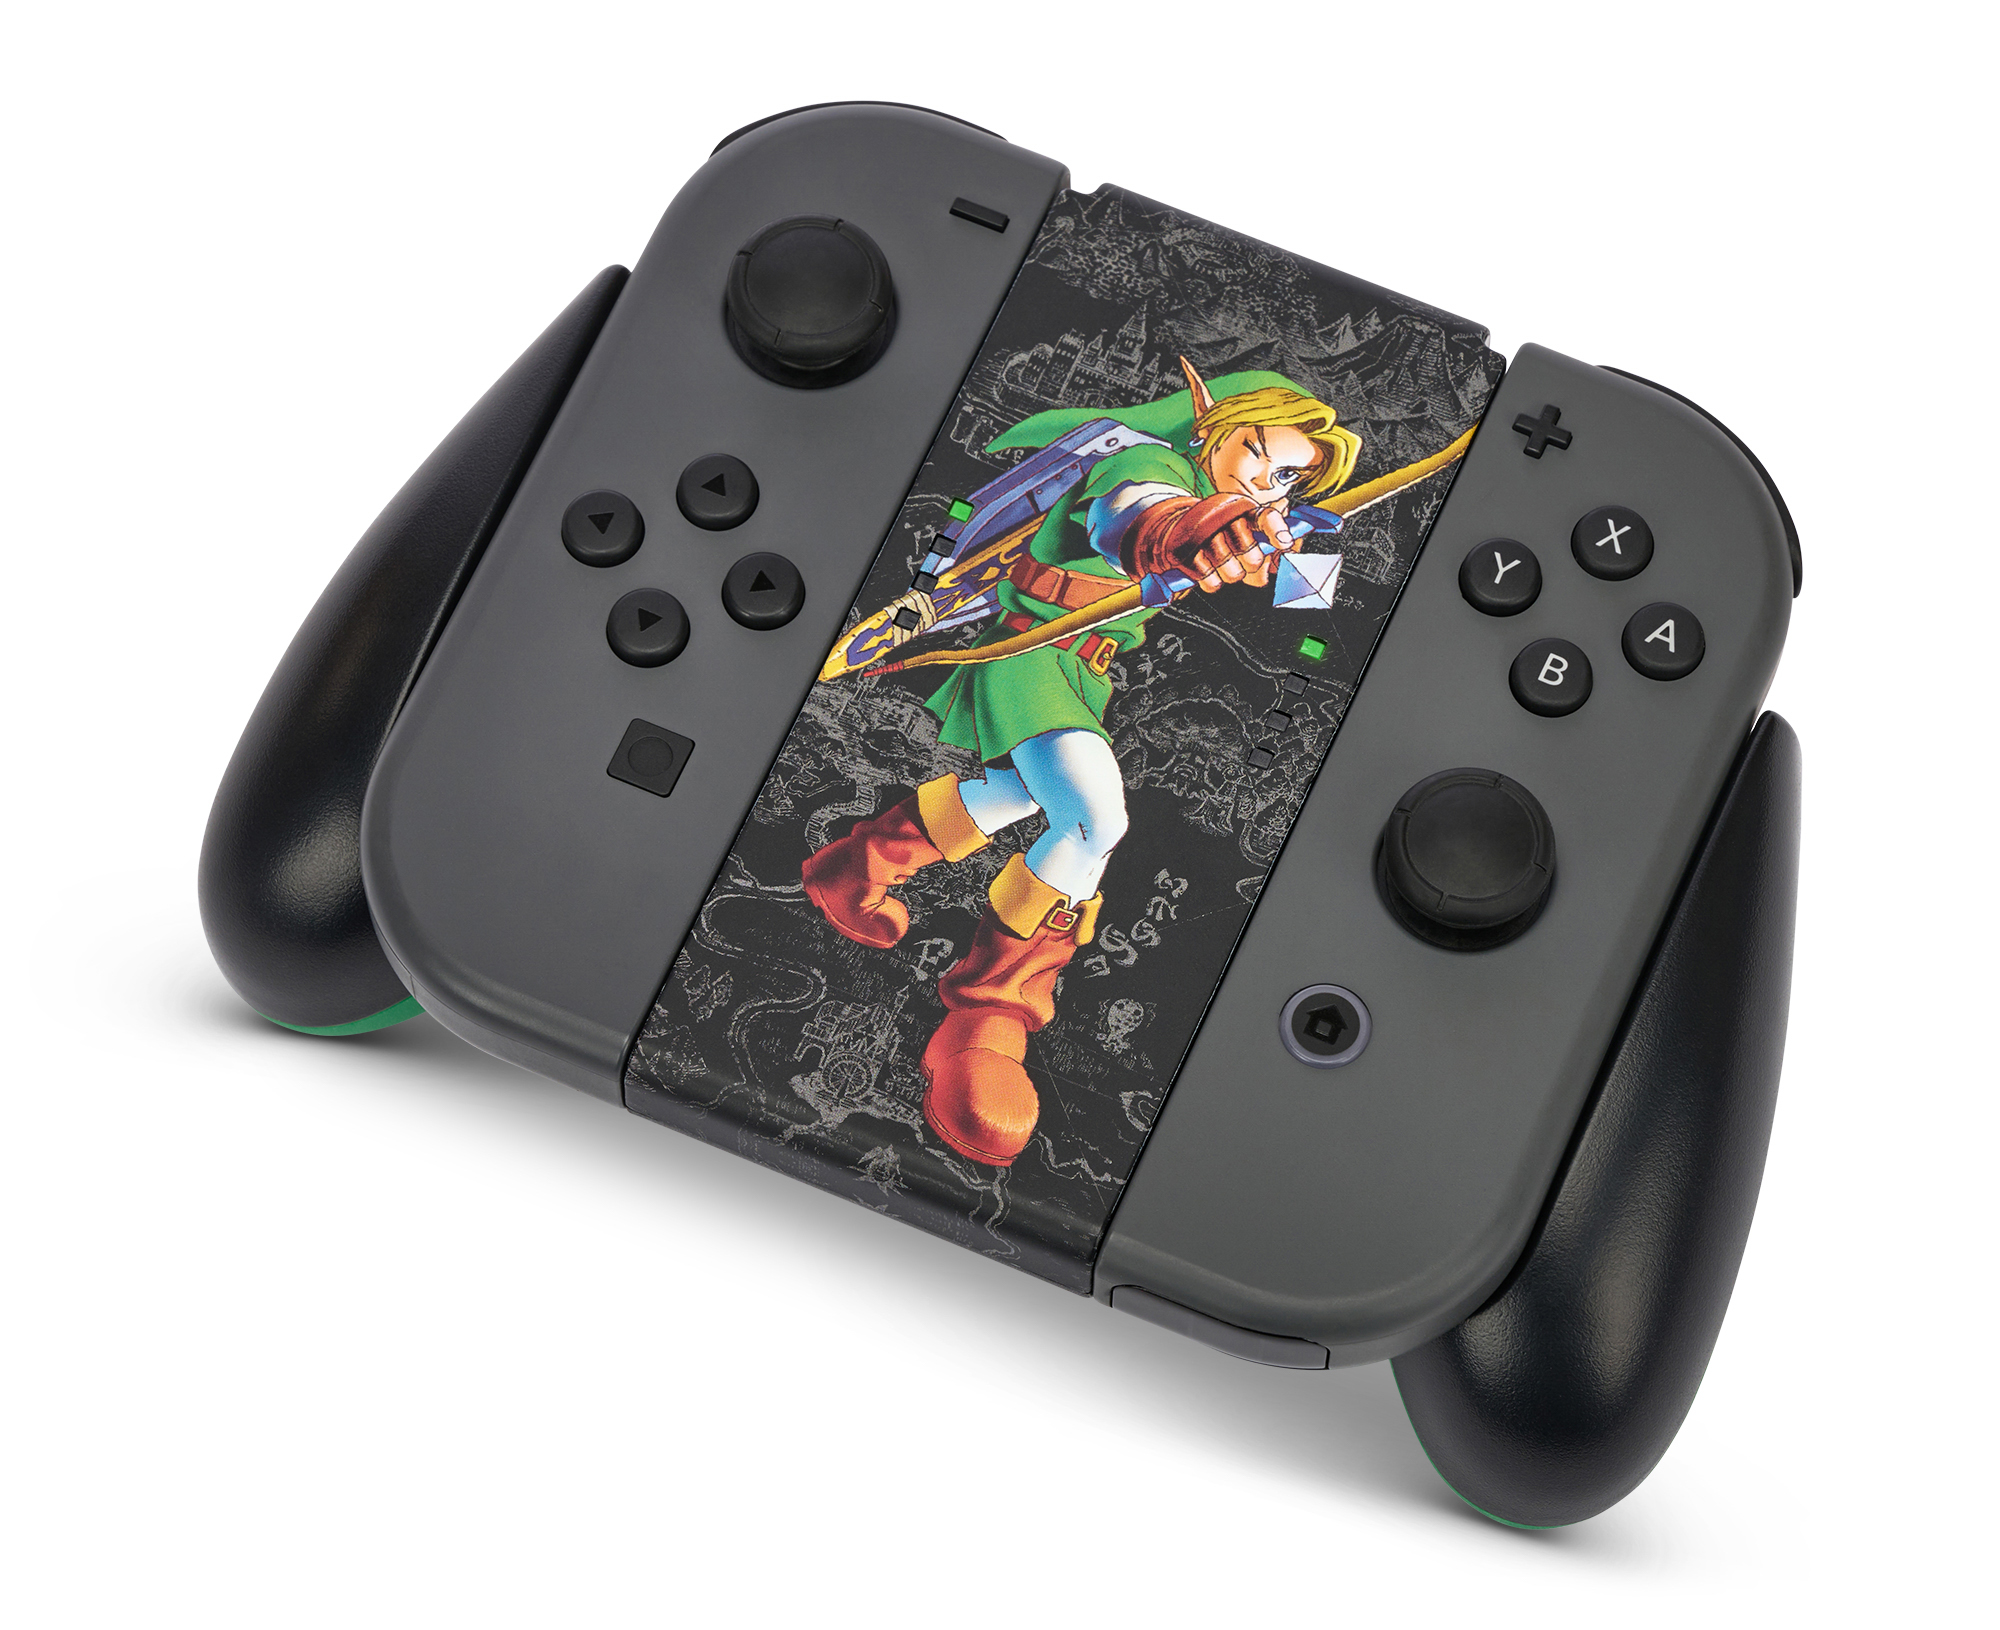 Nintendo Switch Joy-Con - The Legend of Zelda - Hyrule Marksman